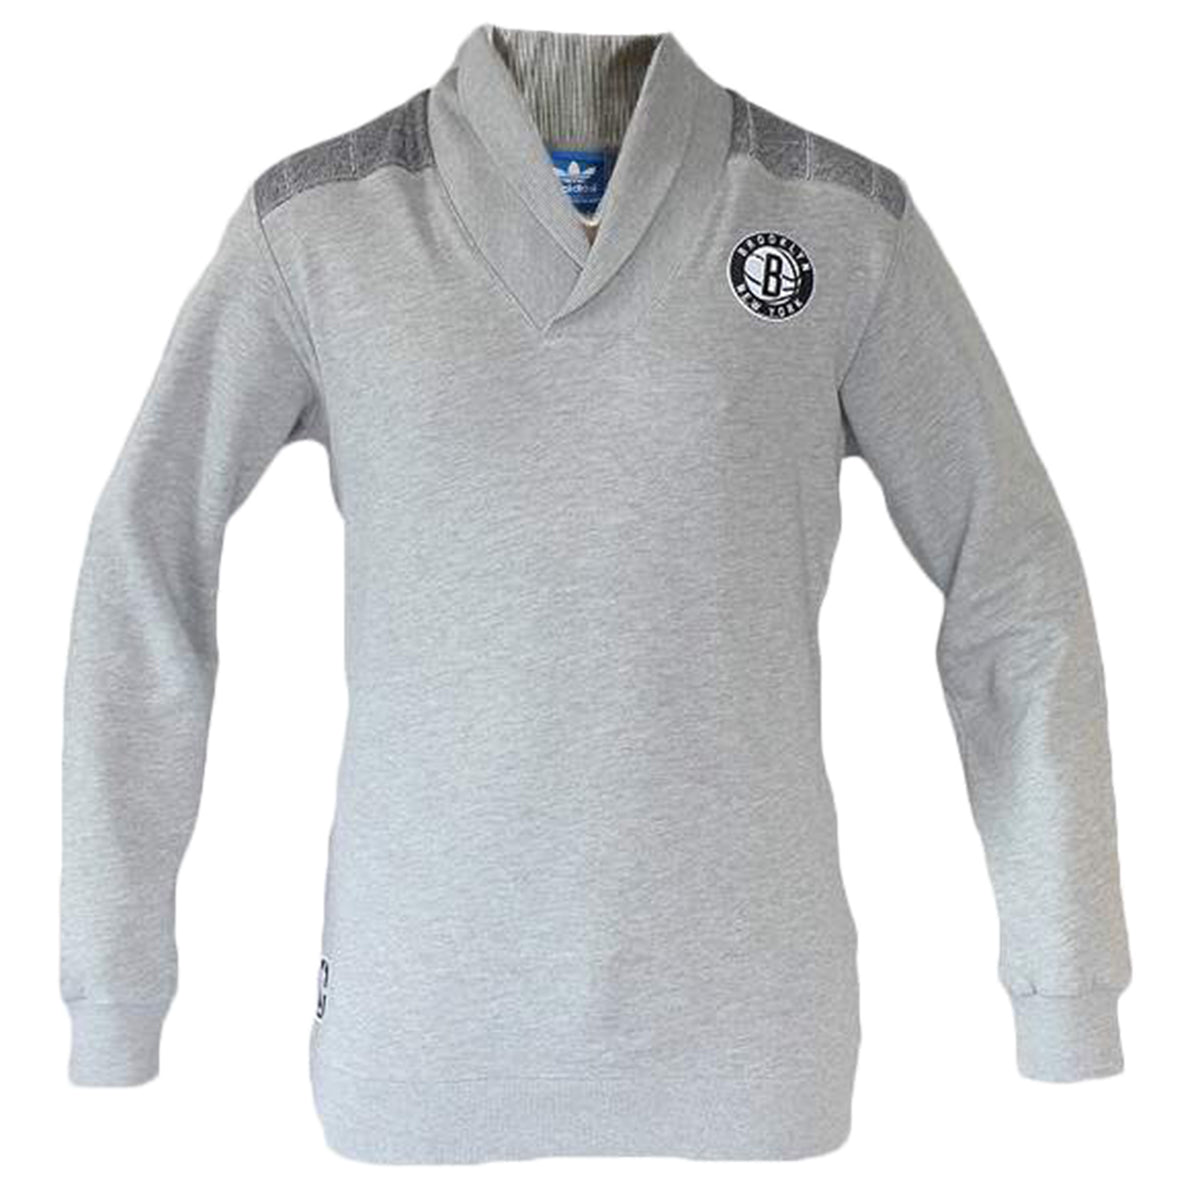 Adidas Nba Brooklyn Nets Sweatshirt Mens Style : G76330